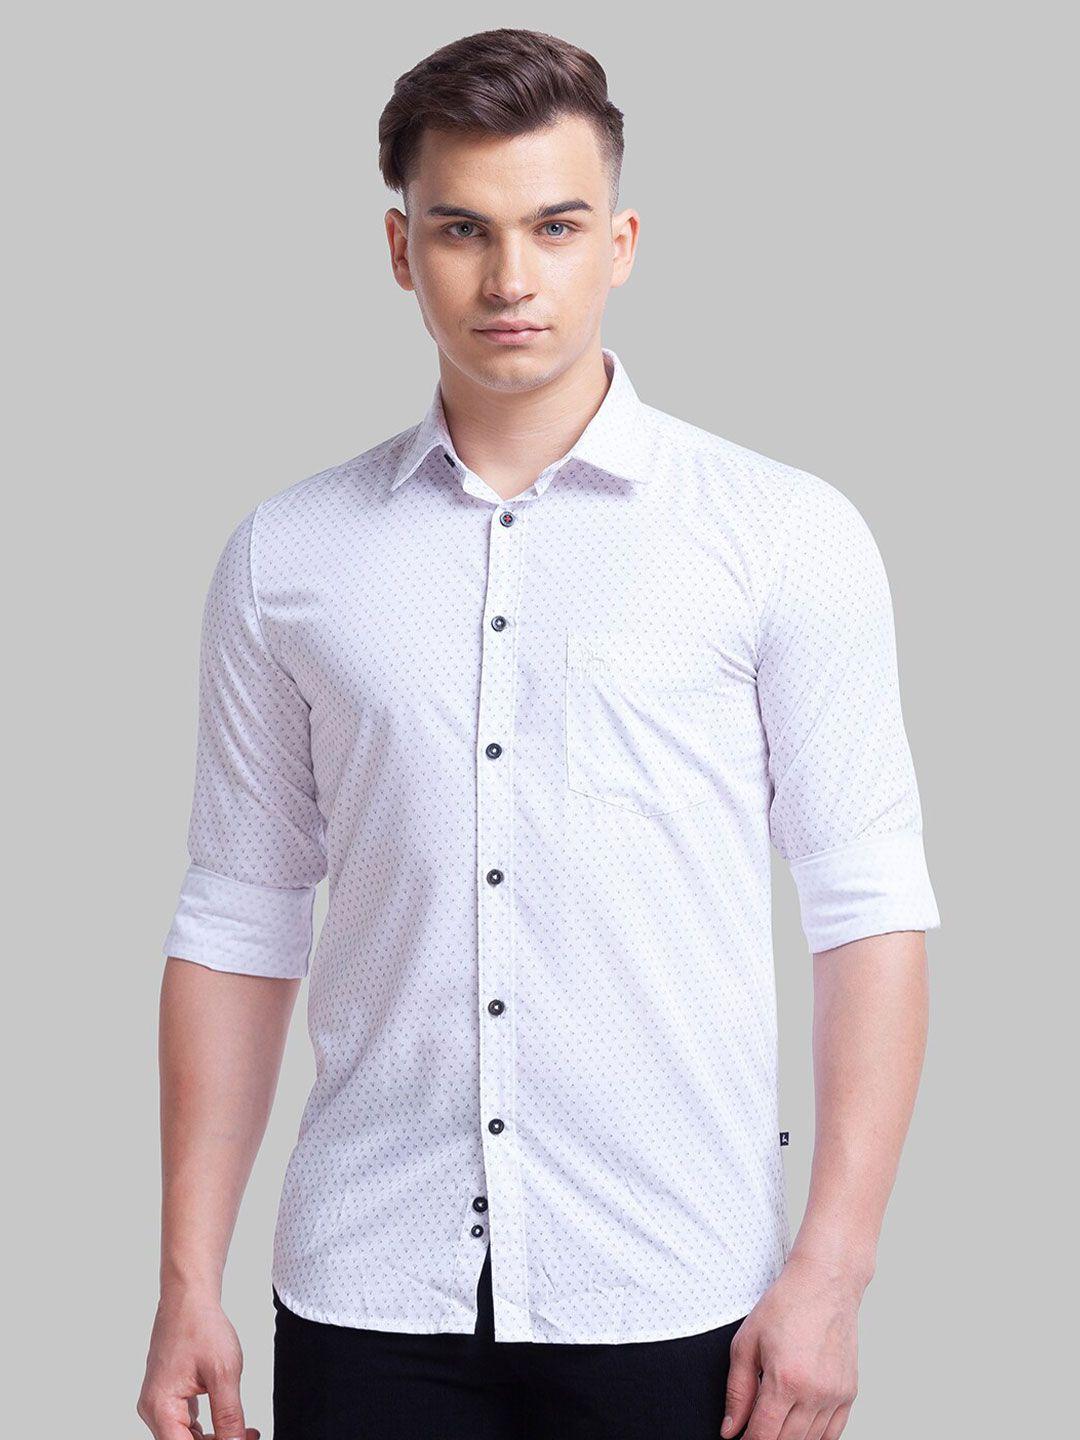 parx-men-slim-fit-printed-casual-shirt